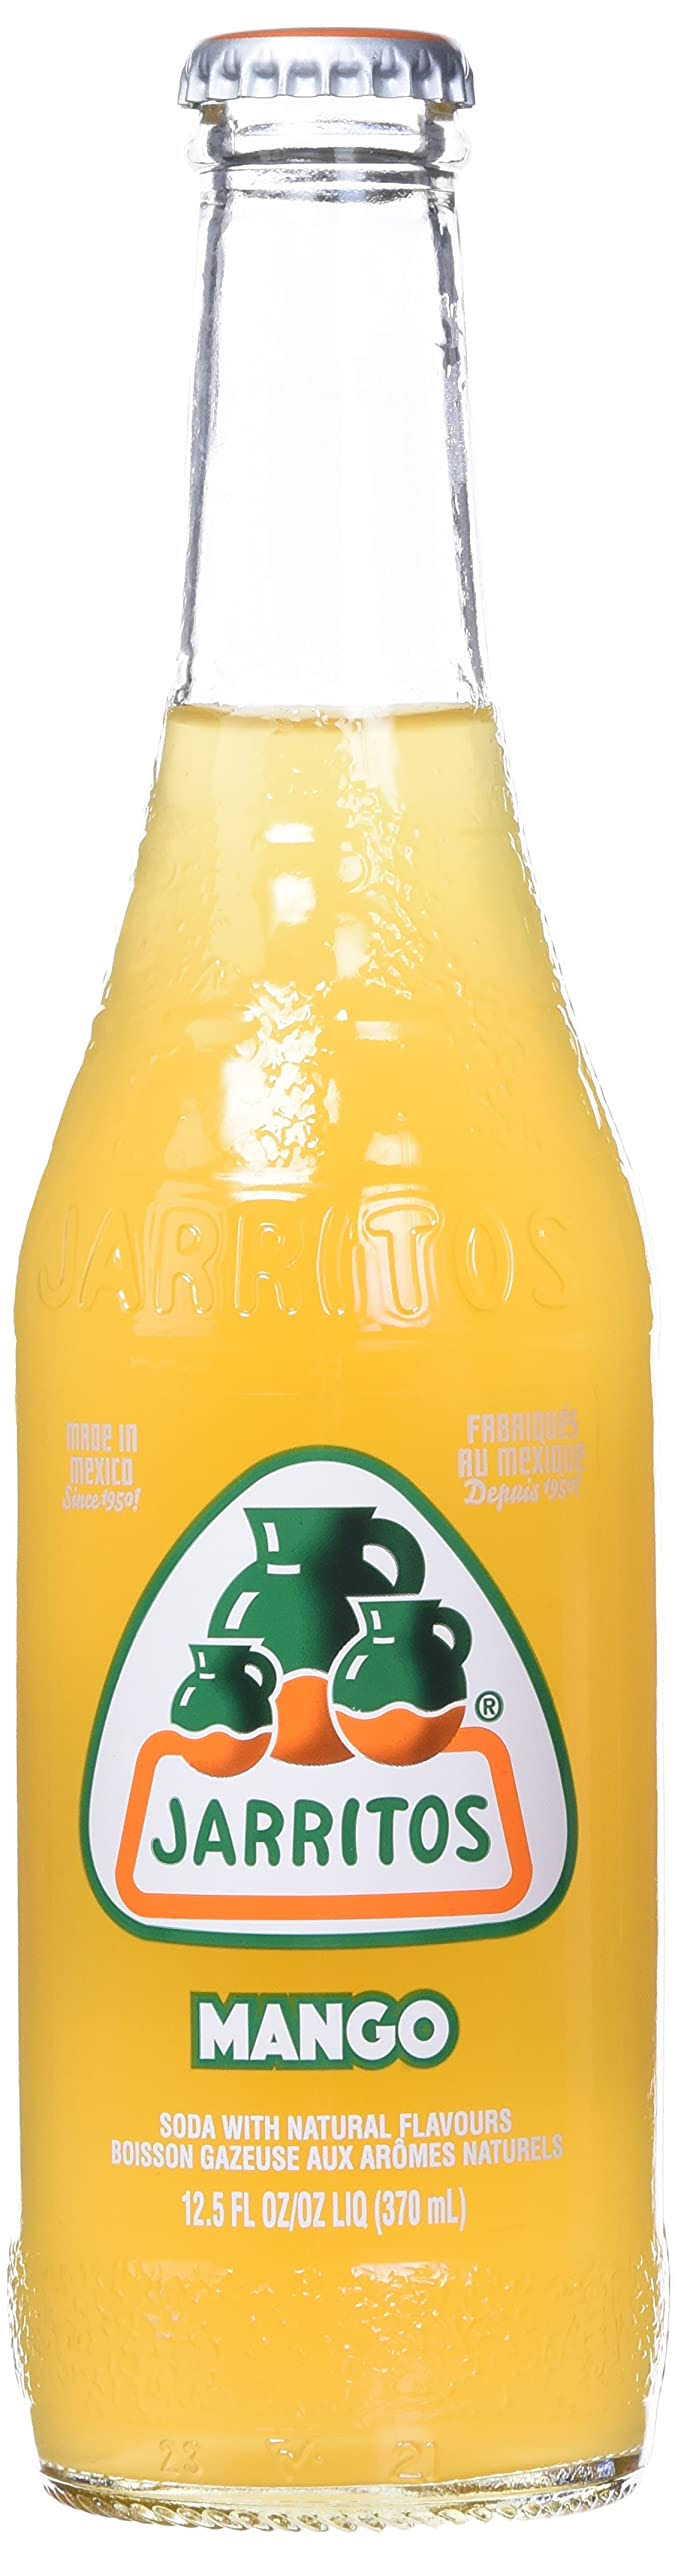 Jarritos Mango Soda Pop